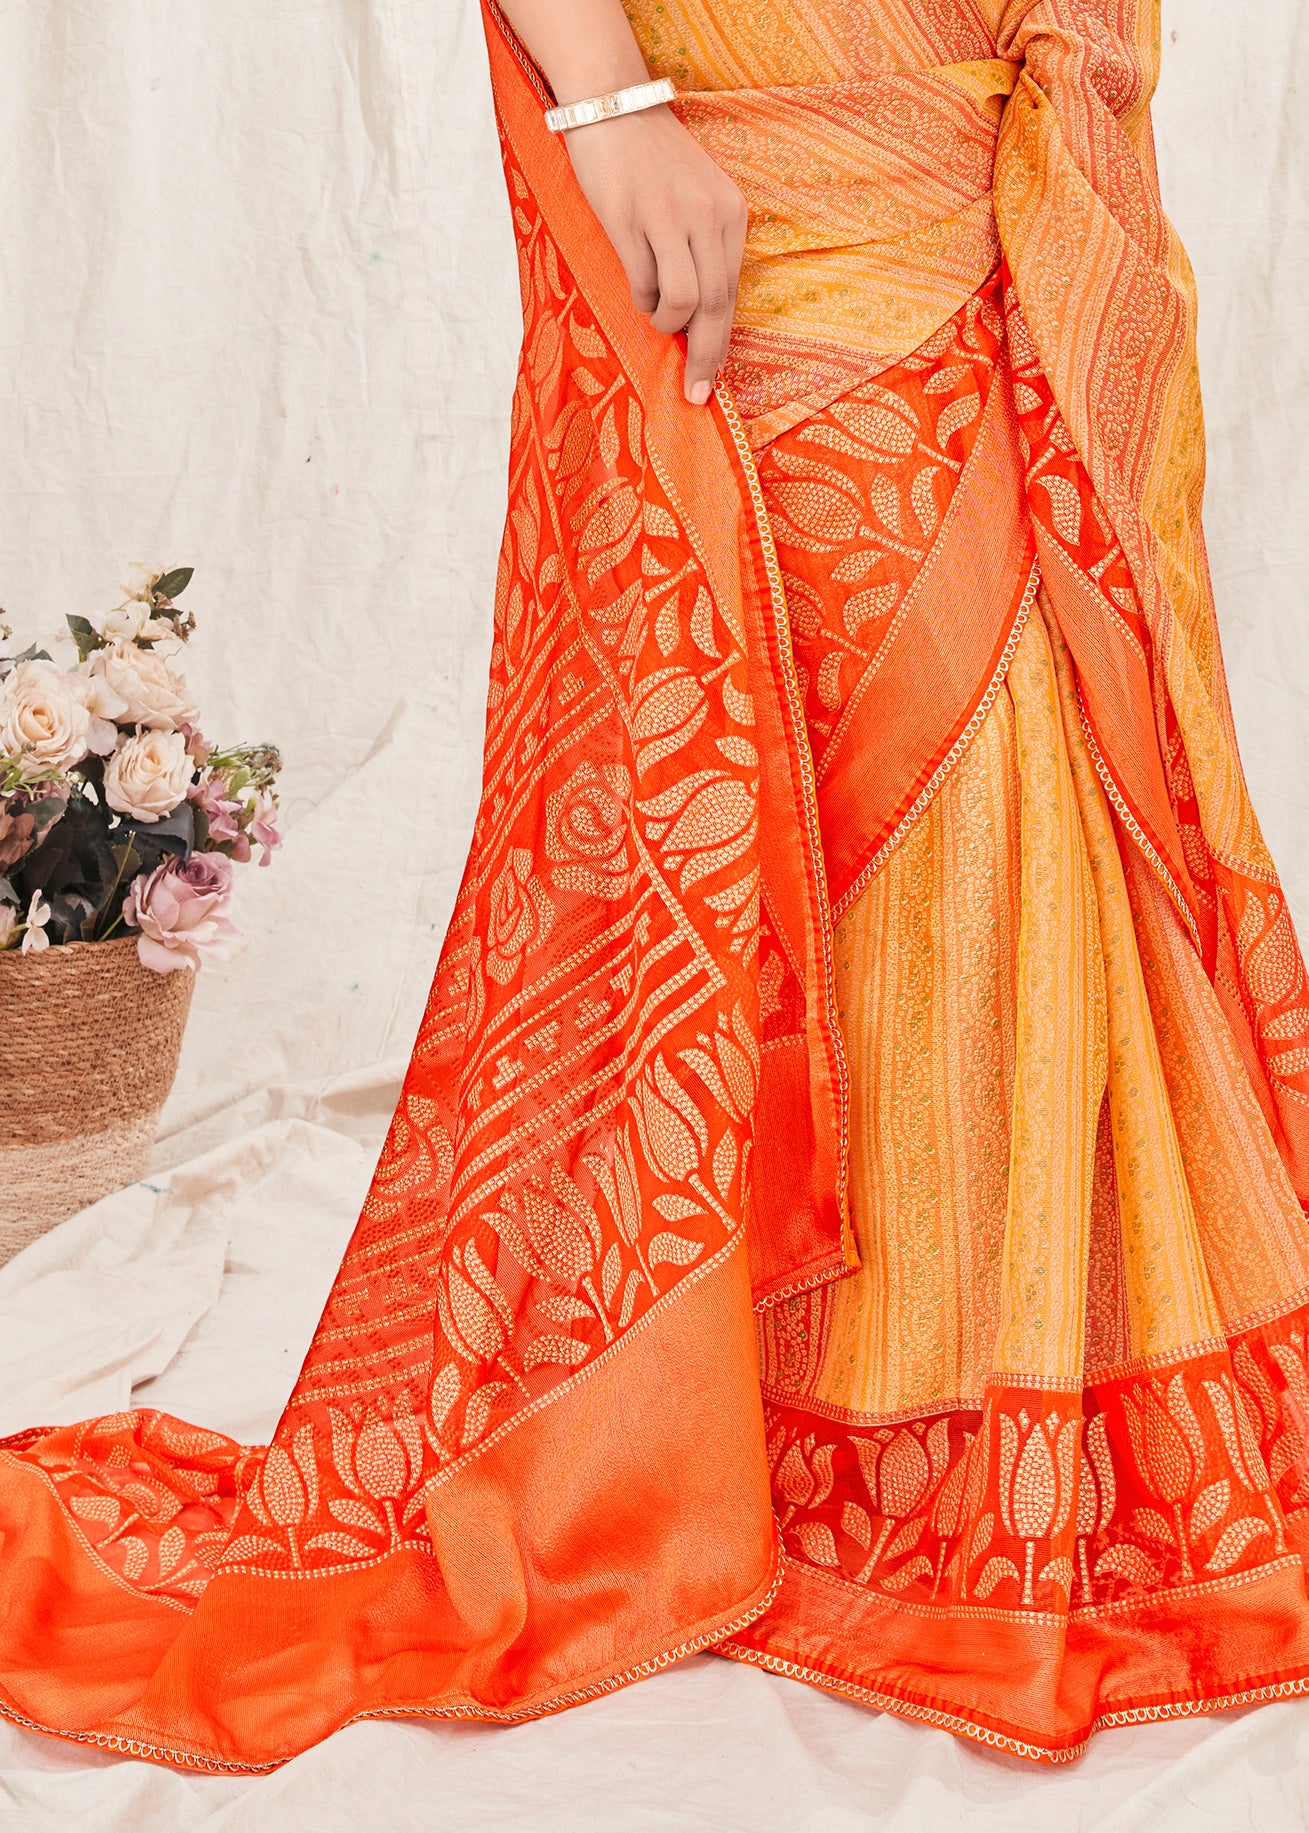 Bandhani Bandhej Printed Orange Yellow Soft Marble Chiffon Saree